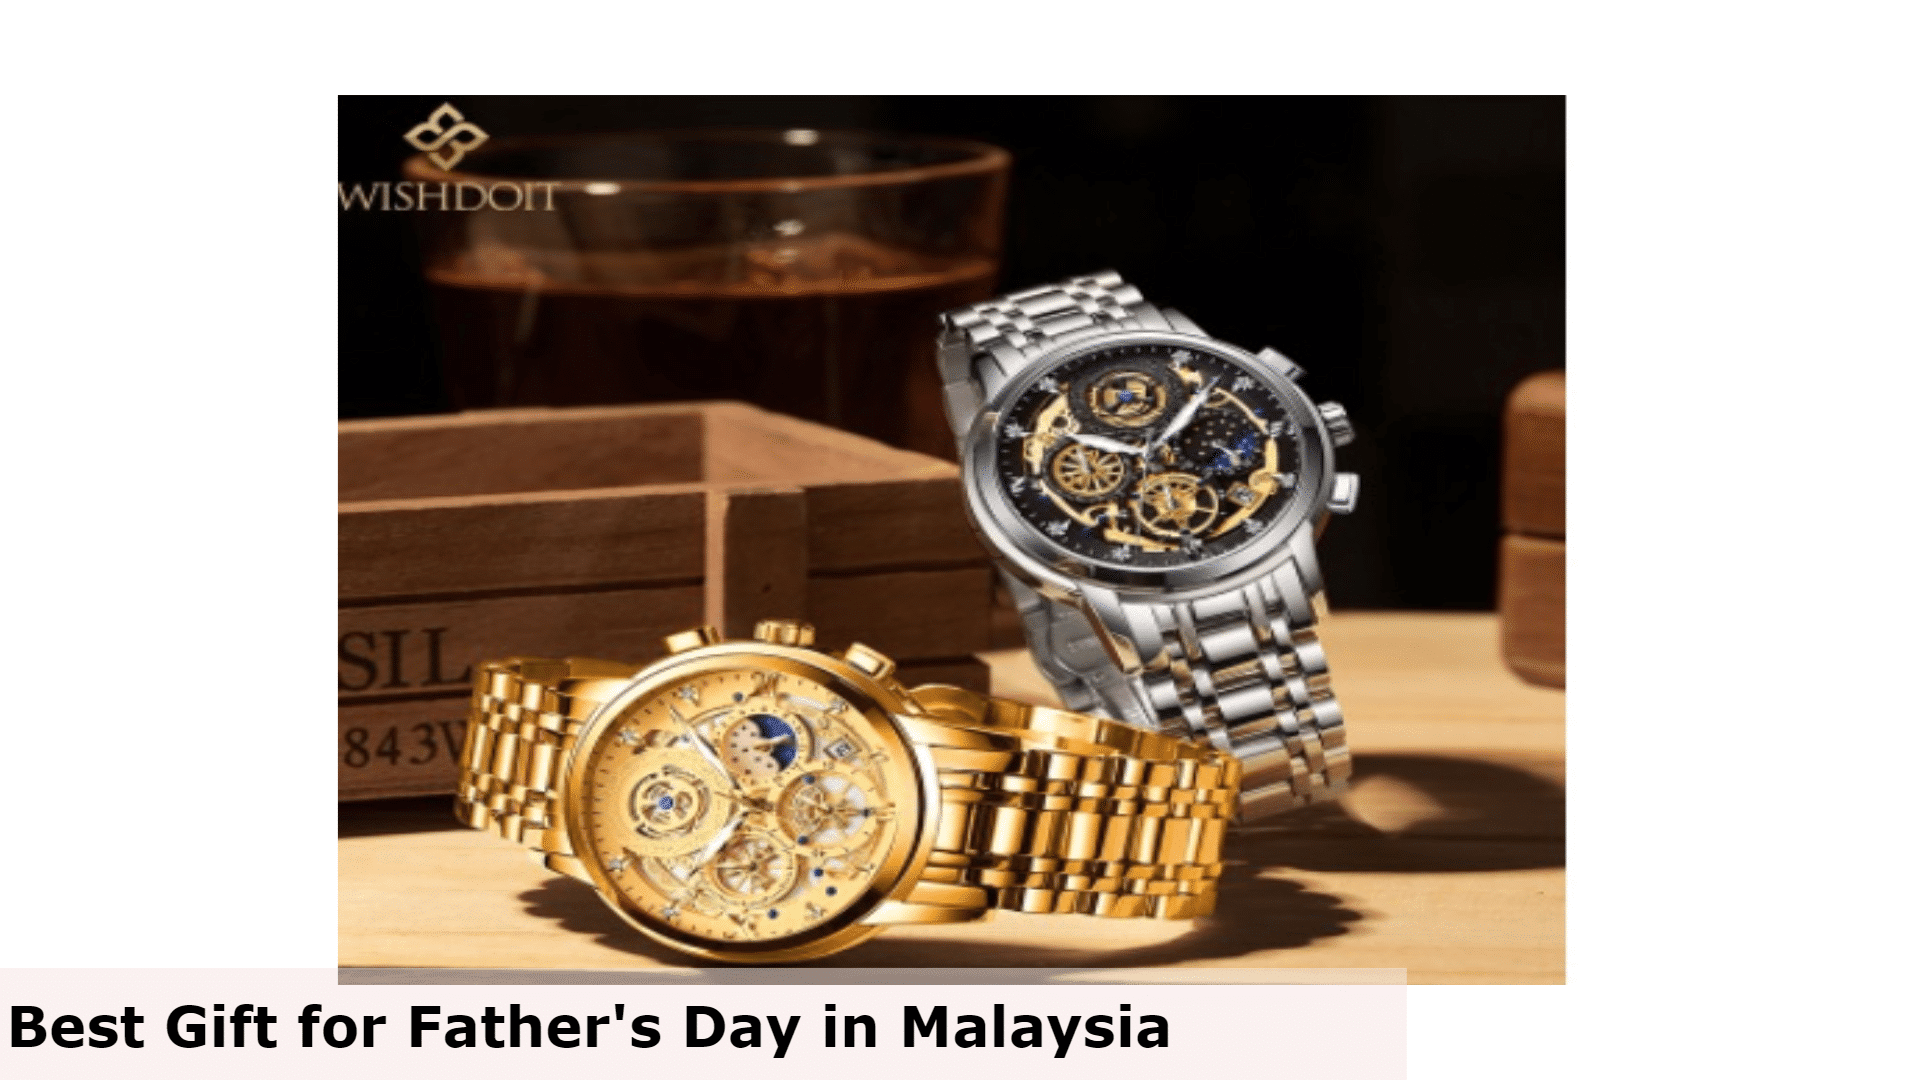 Jam Tangan Lelaki - Hadiah Terbaik untuk Hari Bapa di Malaysia, Hadiah Terbaik untuk Hari Bapa Malaysia, Hadiah Hari Bapa Terbaik untuk Ayah, Apa yang ayah mahukan untuk Hari Bapa di Malaysia?, Apakah hadiah murah yang bagus untuk Hari Bapa di Malaysia?, Adakah anda memberi hadiah pada Hari Bapa di Malaysia?, hadiah untuk ayah yang tidak mahu apa-apa, idea hadiah hari bapa yang ringkas, idea hadiah hari bapa 2022, hadiah hari bapa' idea semasa covid, idea hadiah hari bapa daripada anak perempuan, hadiah unik untuk ayah, idea hadiah hari bapa daripada isteri, hadiah hari bapa daripada anak lelaki, Apa yang dibeli untuk ayah yang tidak mahu apa-apa?, Apa yang perlu ayah yang sukar dibeli?, Apa yang perlu saya dapatkan ayah saya yang membosankan untuk Krismas?, Hadiah apa yang ayah suka?,